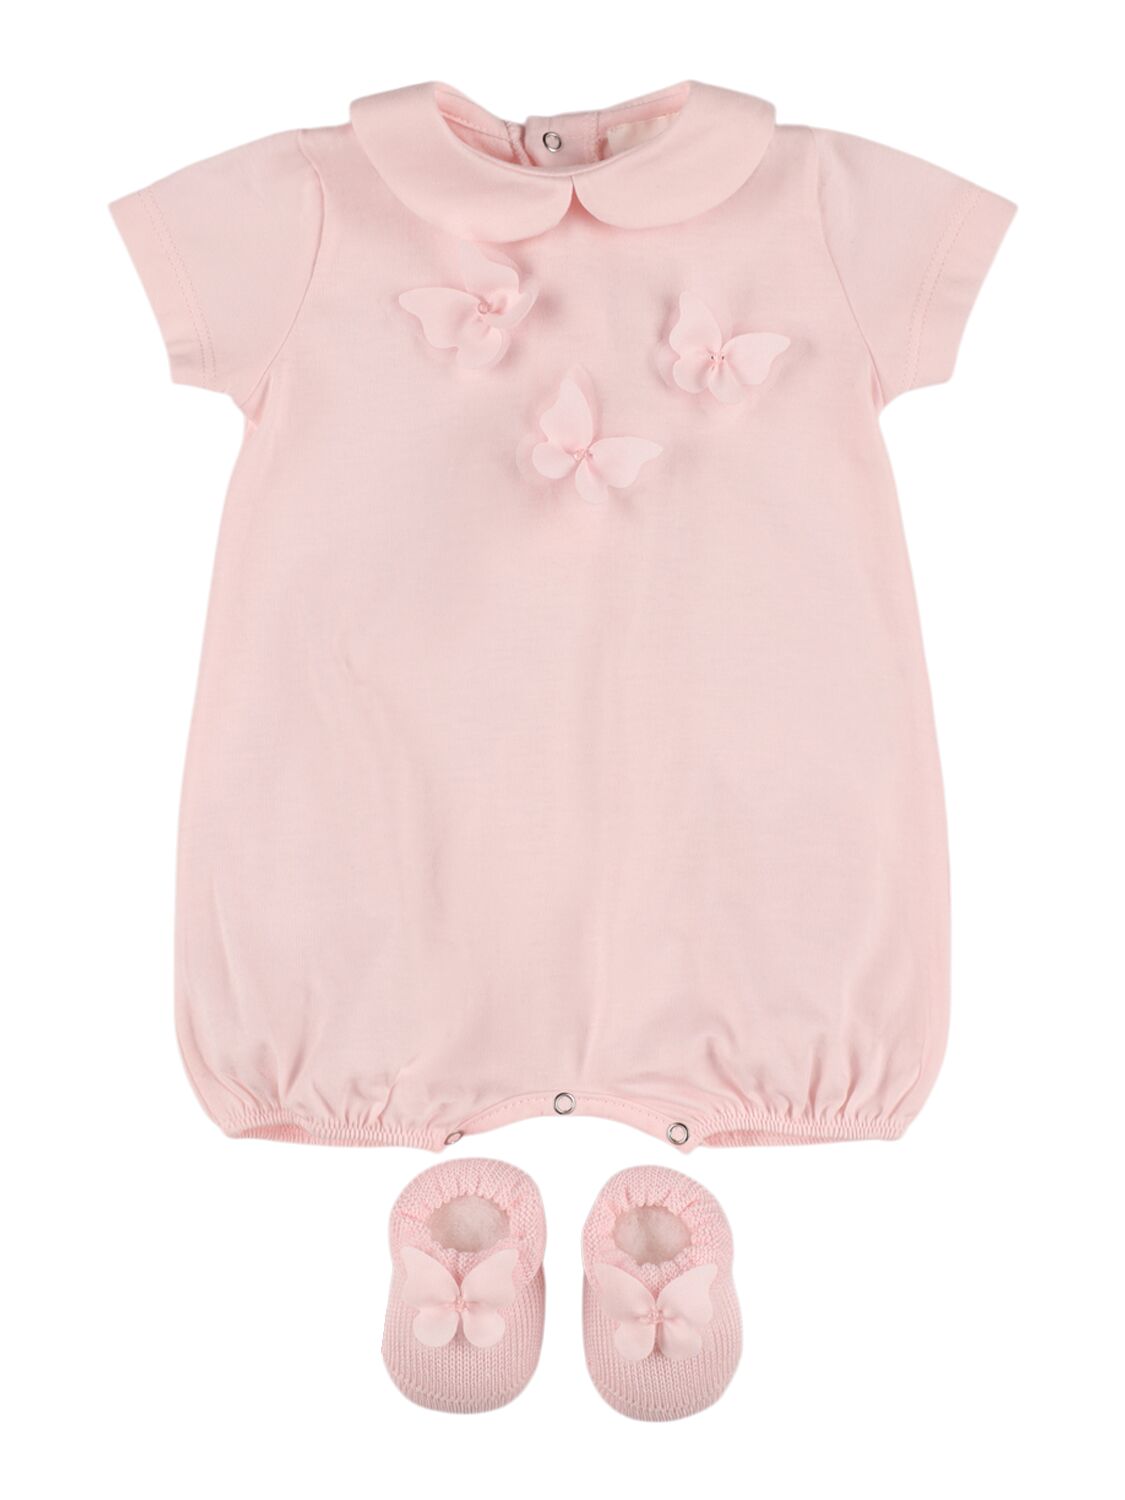 Story Loris Babies' Jersey Bodysuit & Booties W/ Butterfly In Pink